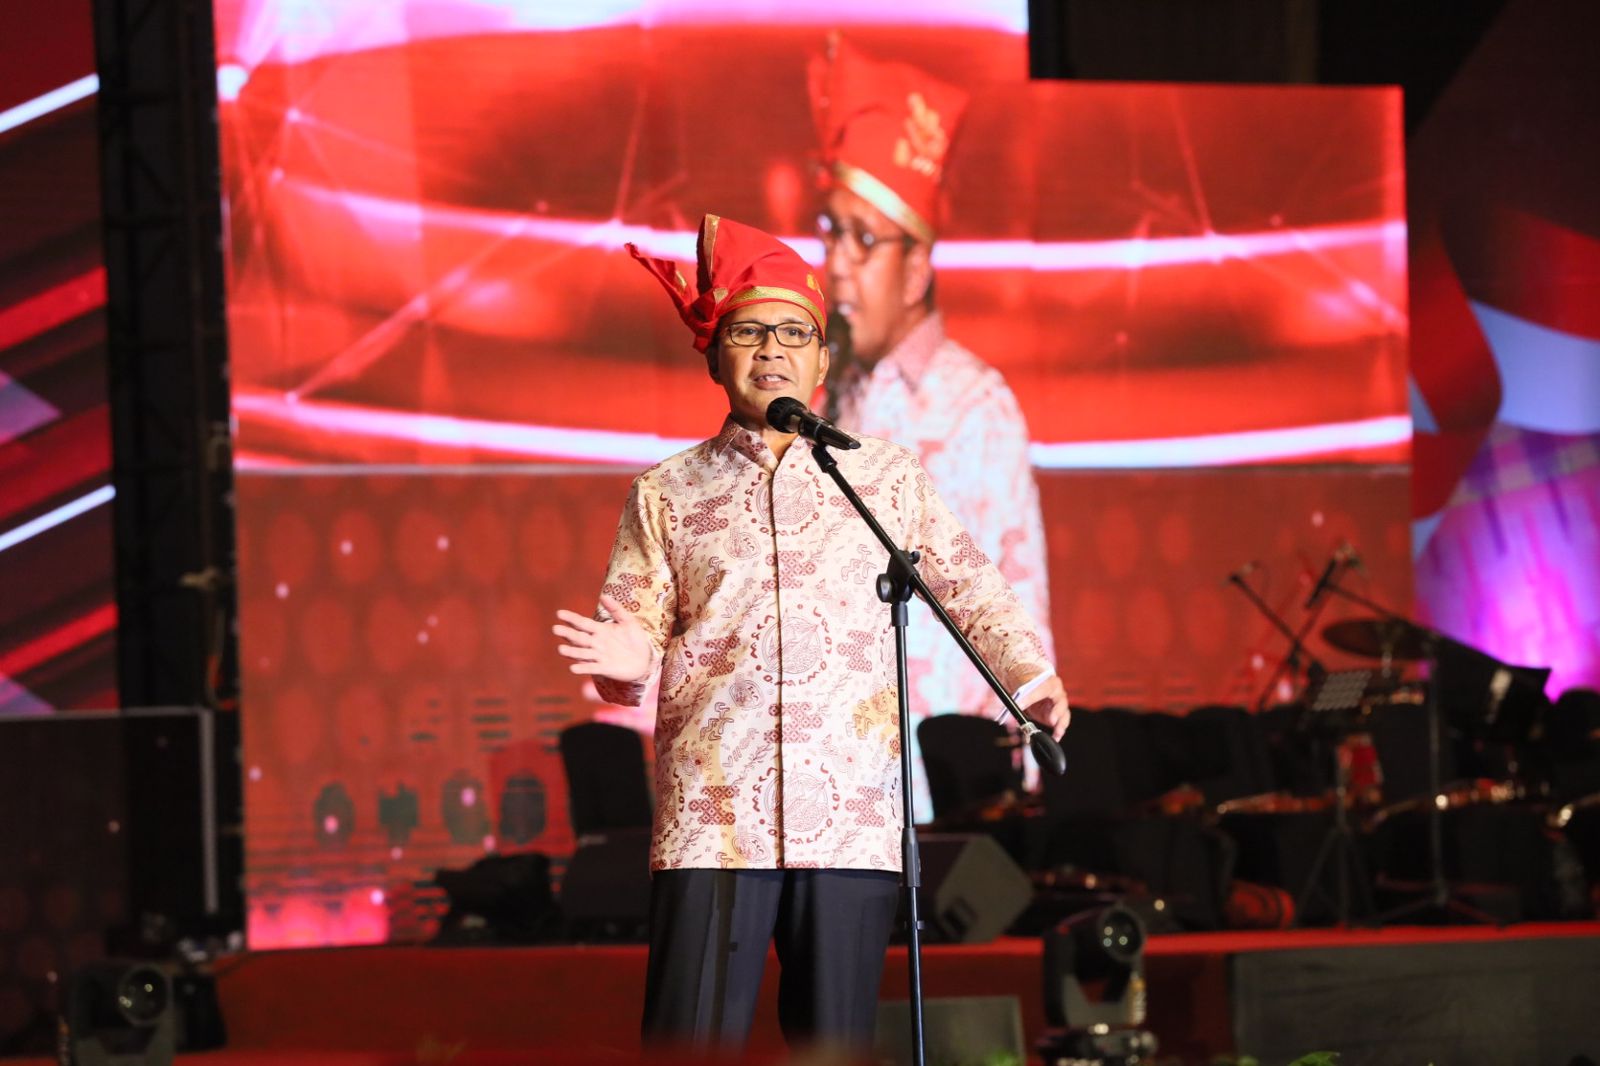 Wali Kota Danny Pomanto Undang Kembali Tamu OTDA Hadiri Festival F8, Gairahkan Ekonomi Makassar